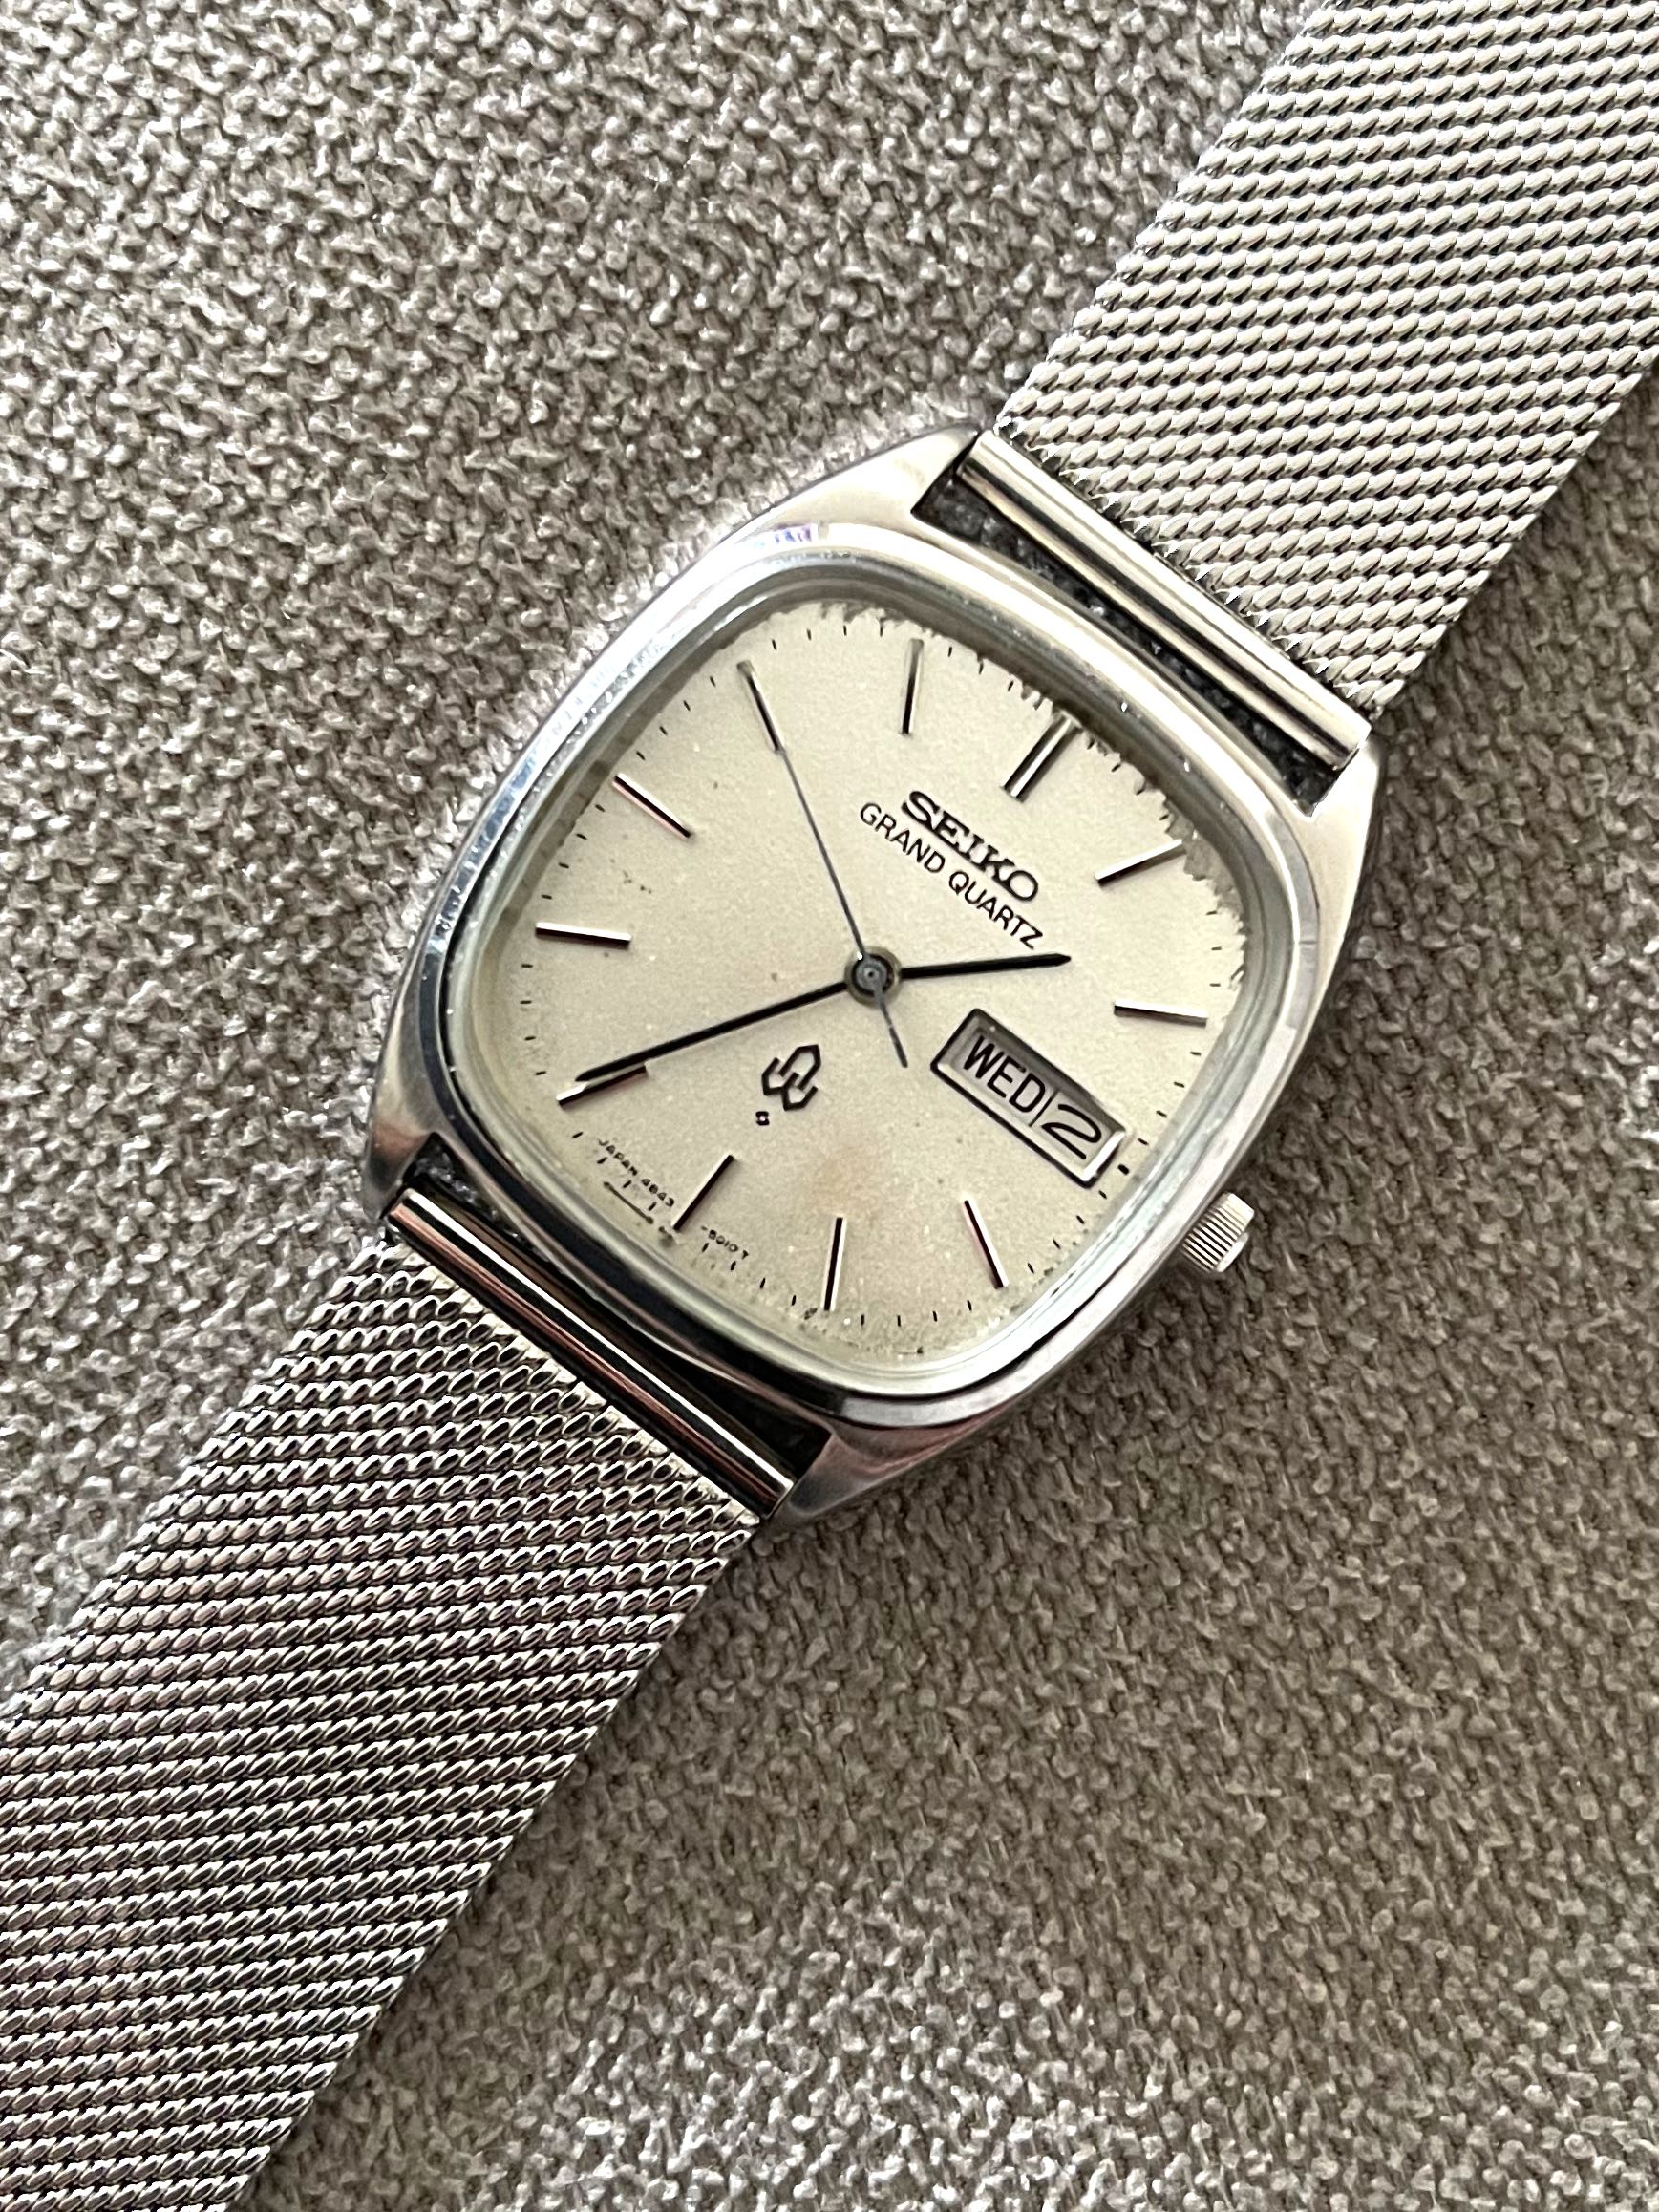 1977 Seiko Grand Seiko Quartz REF 4843-5100, Luxury, Watches on